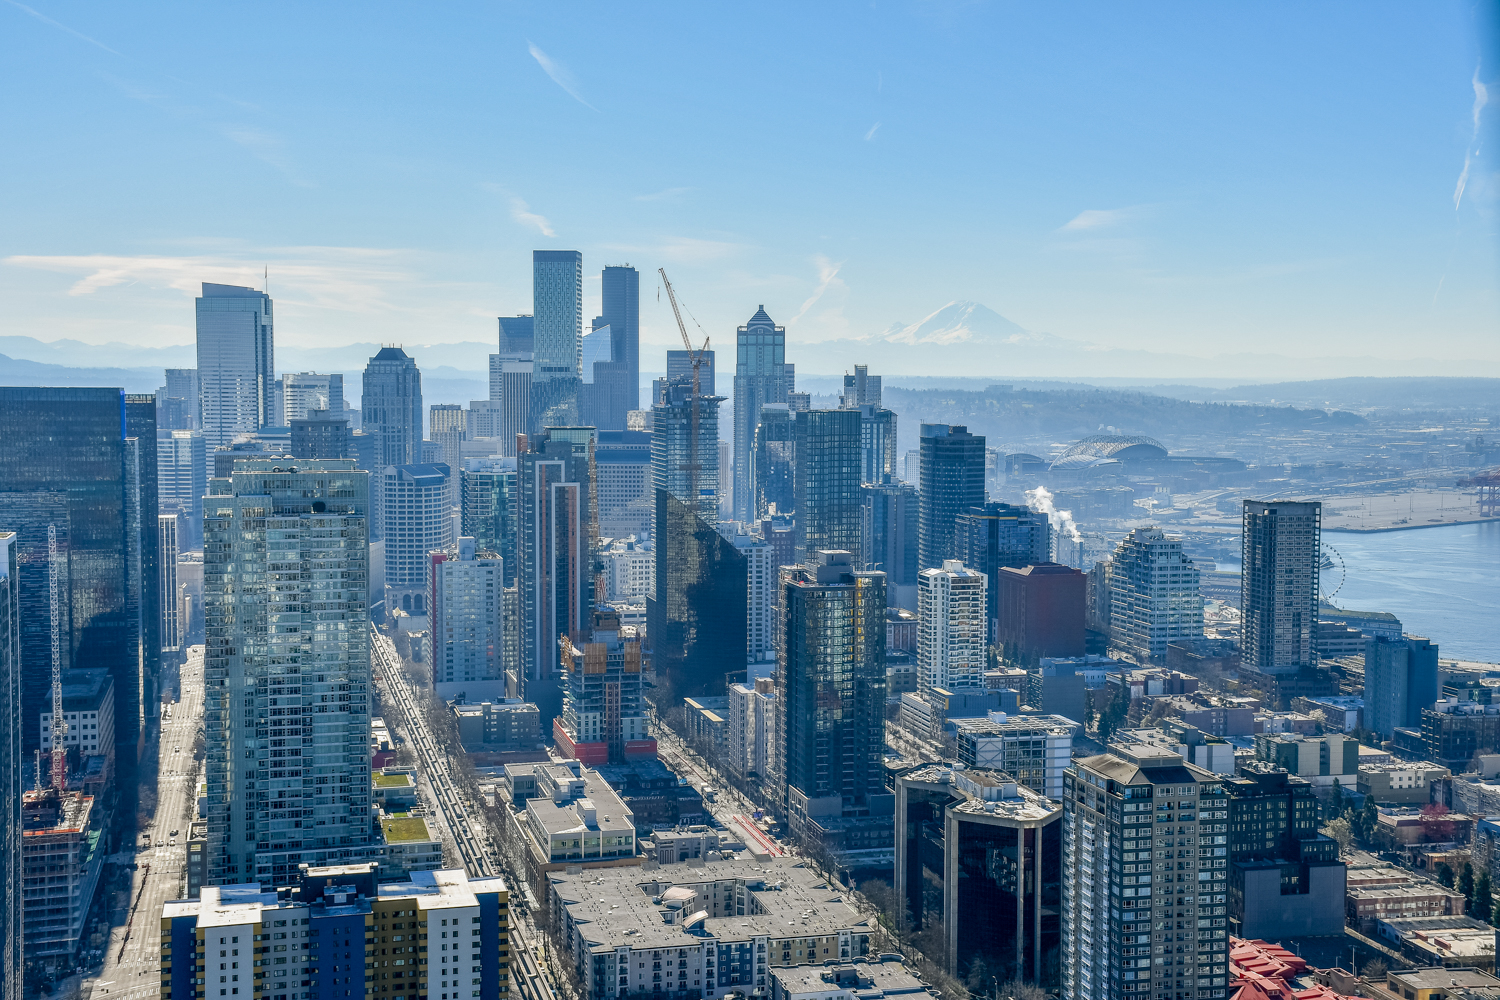 Het uitzicht op de stad Seattle vanaf de Space Needle